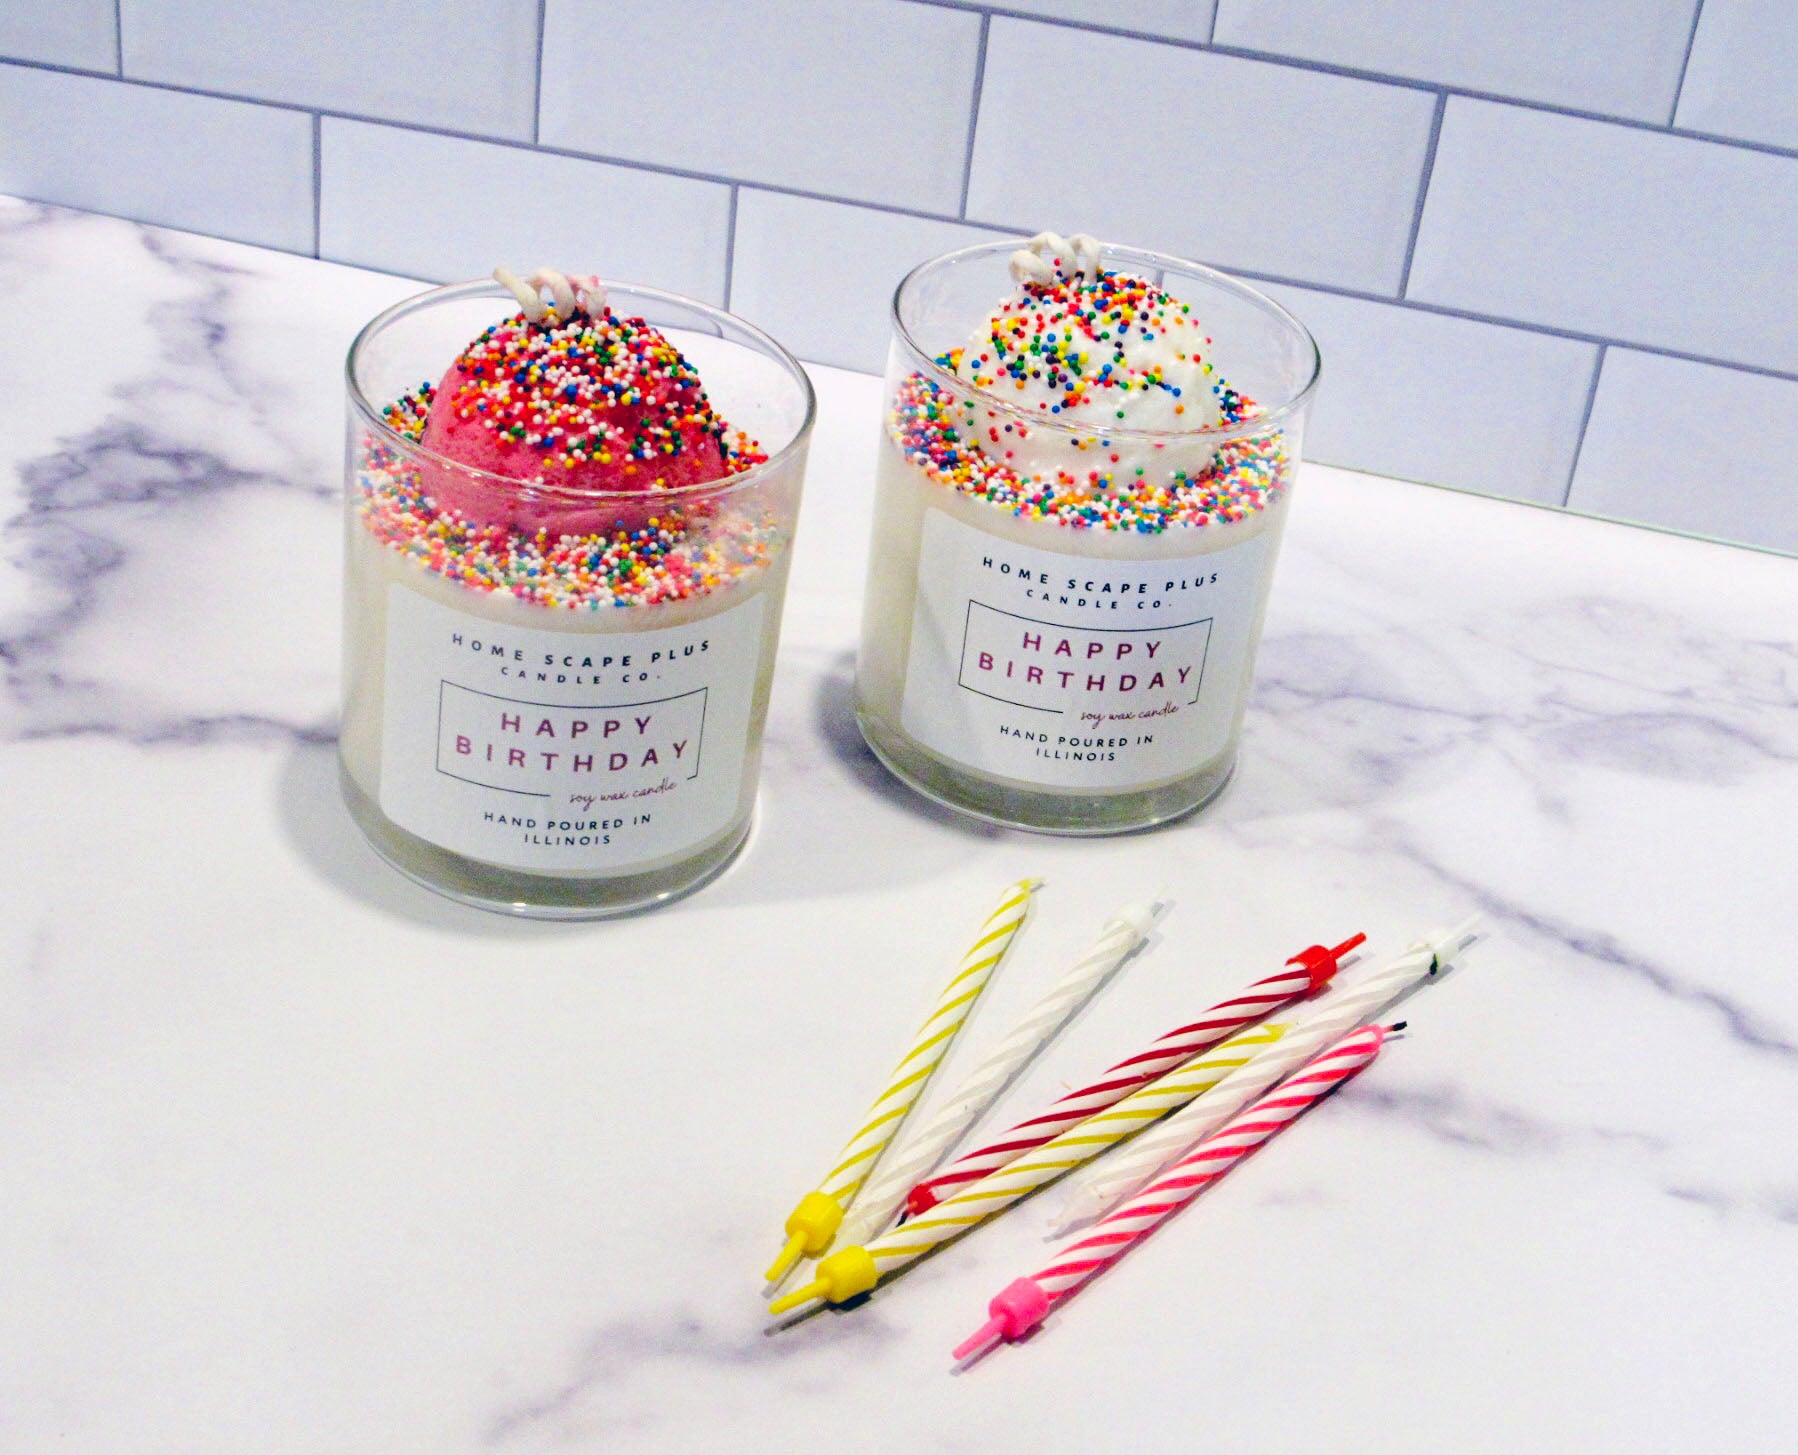 Happy Birthday Candle-Ice Cream Scoop - Home Scape Plus